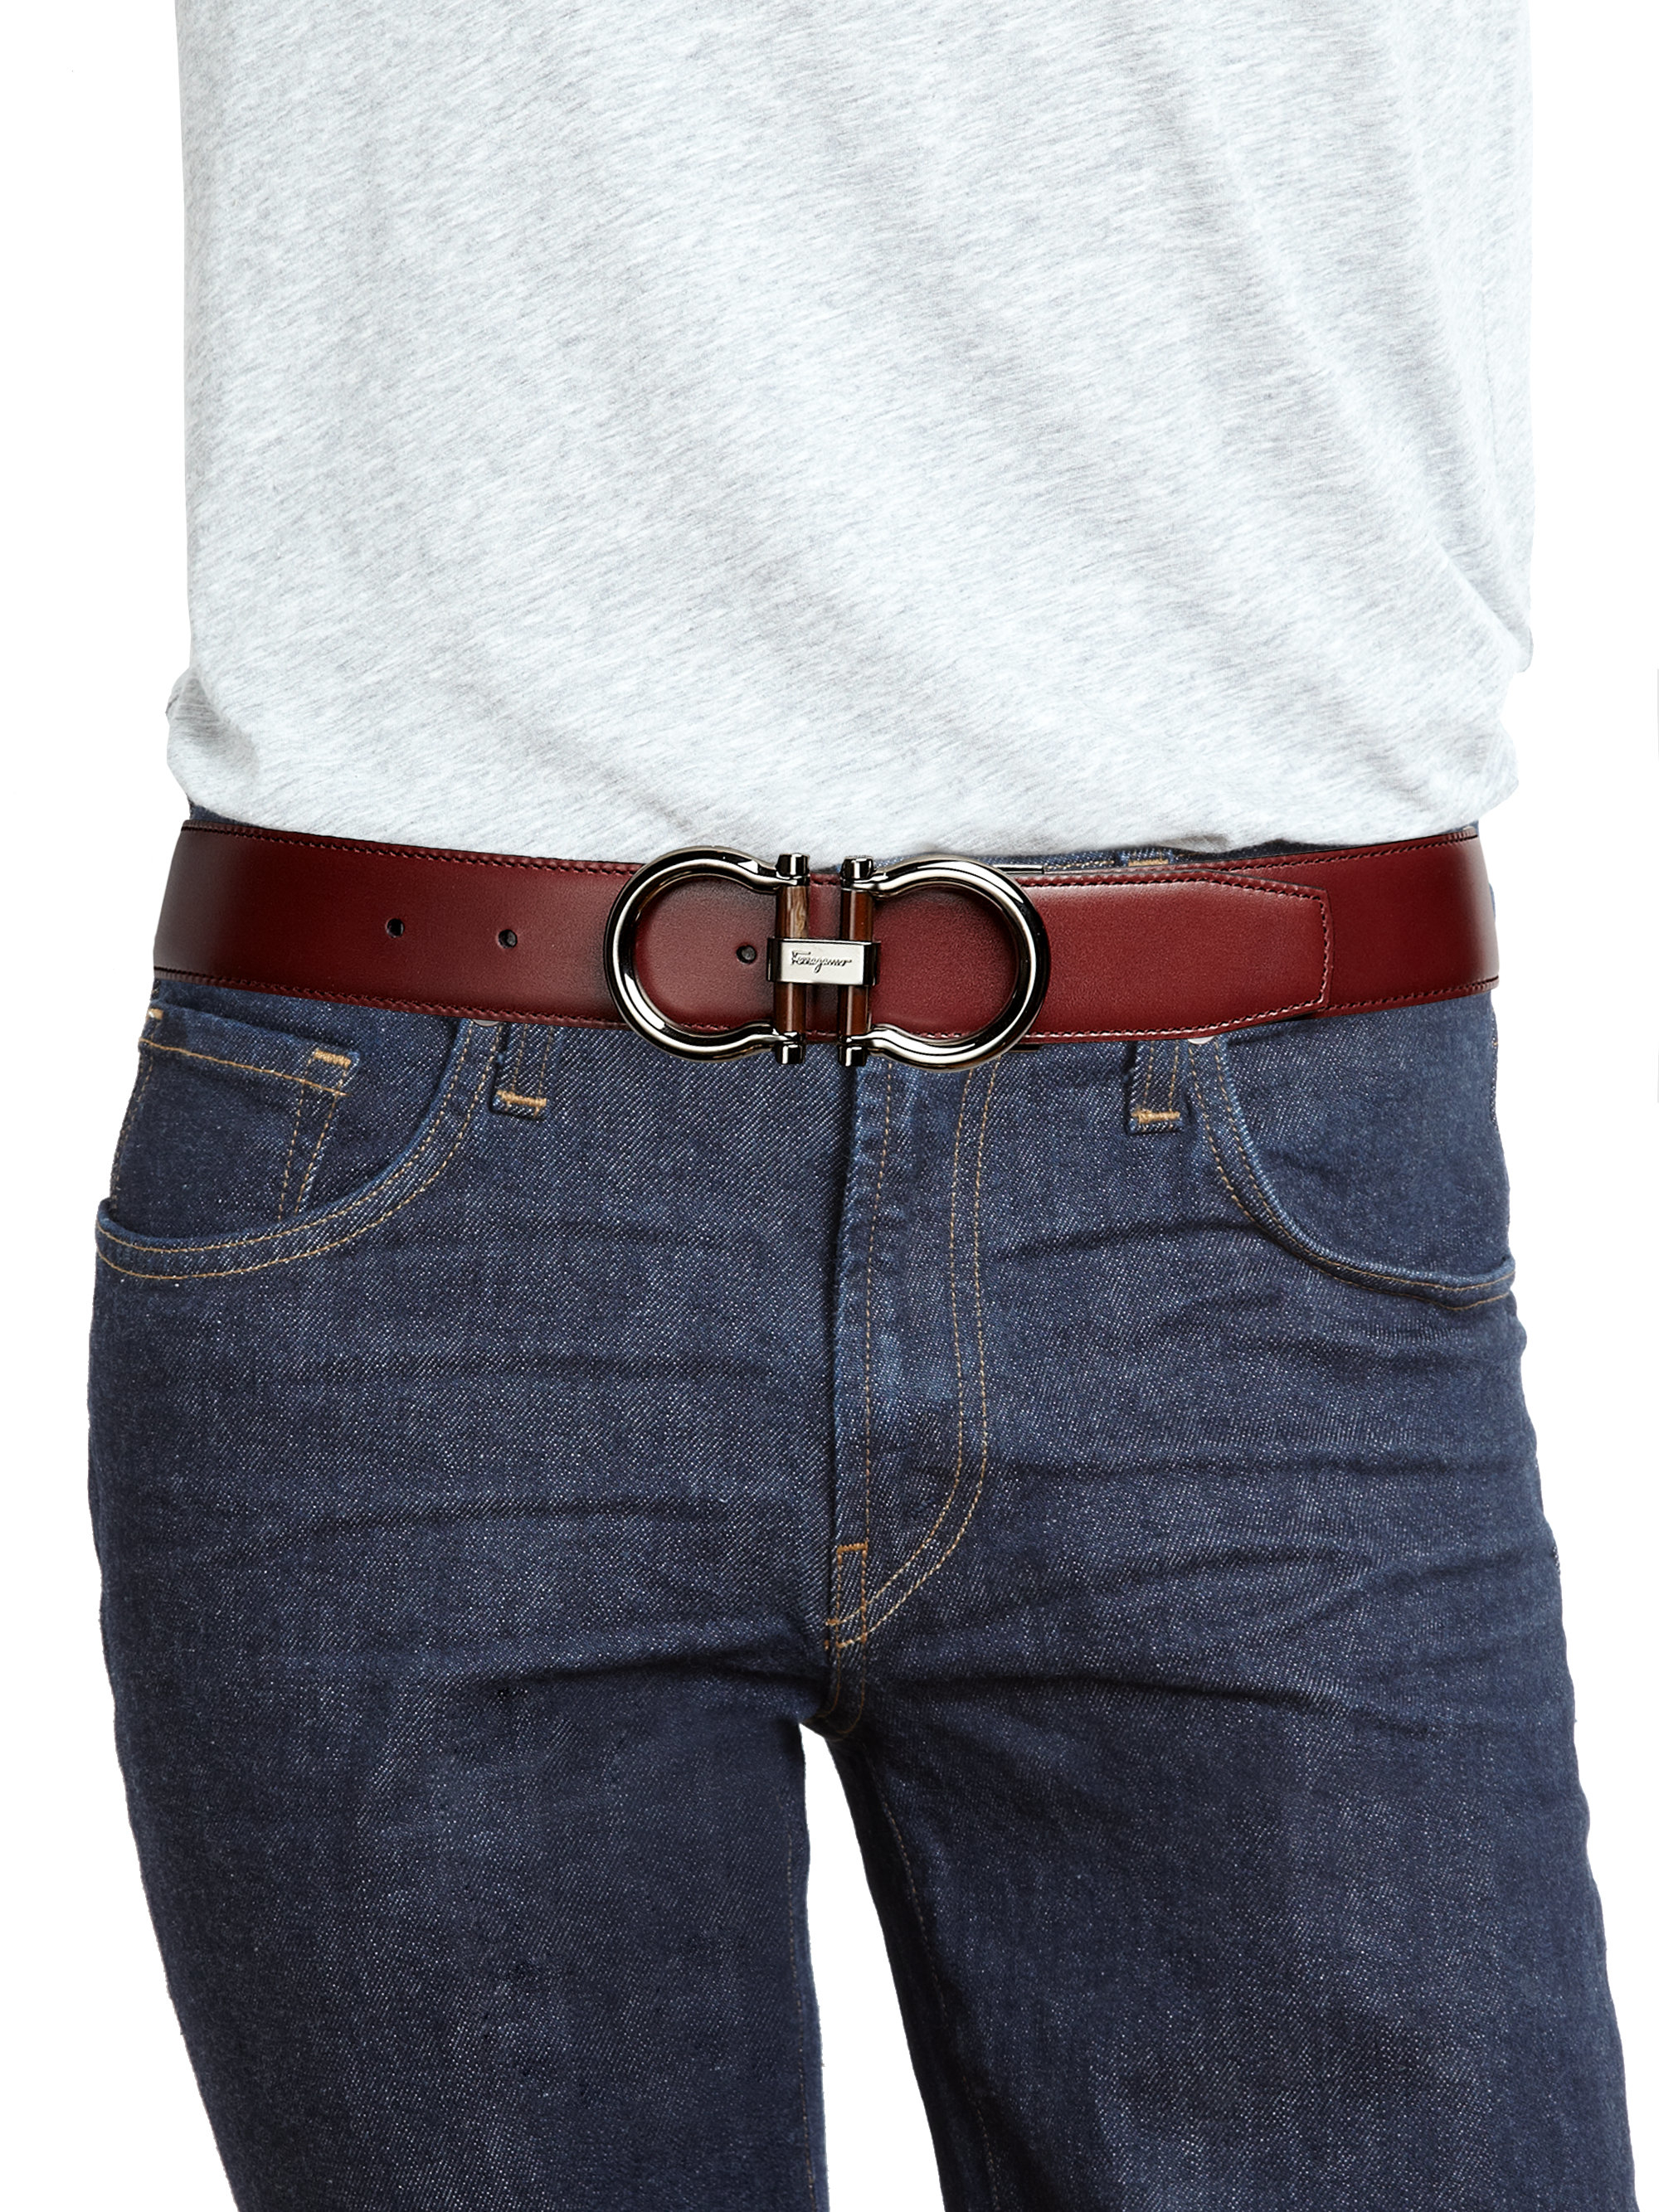 Ferragamo Gancini Reversible Leather Belt in Purple for Men - Lyst